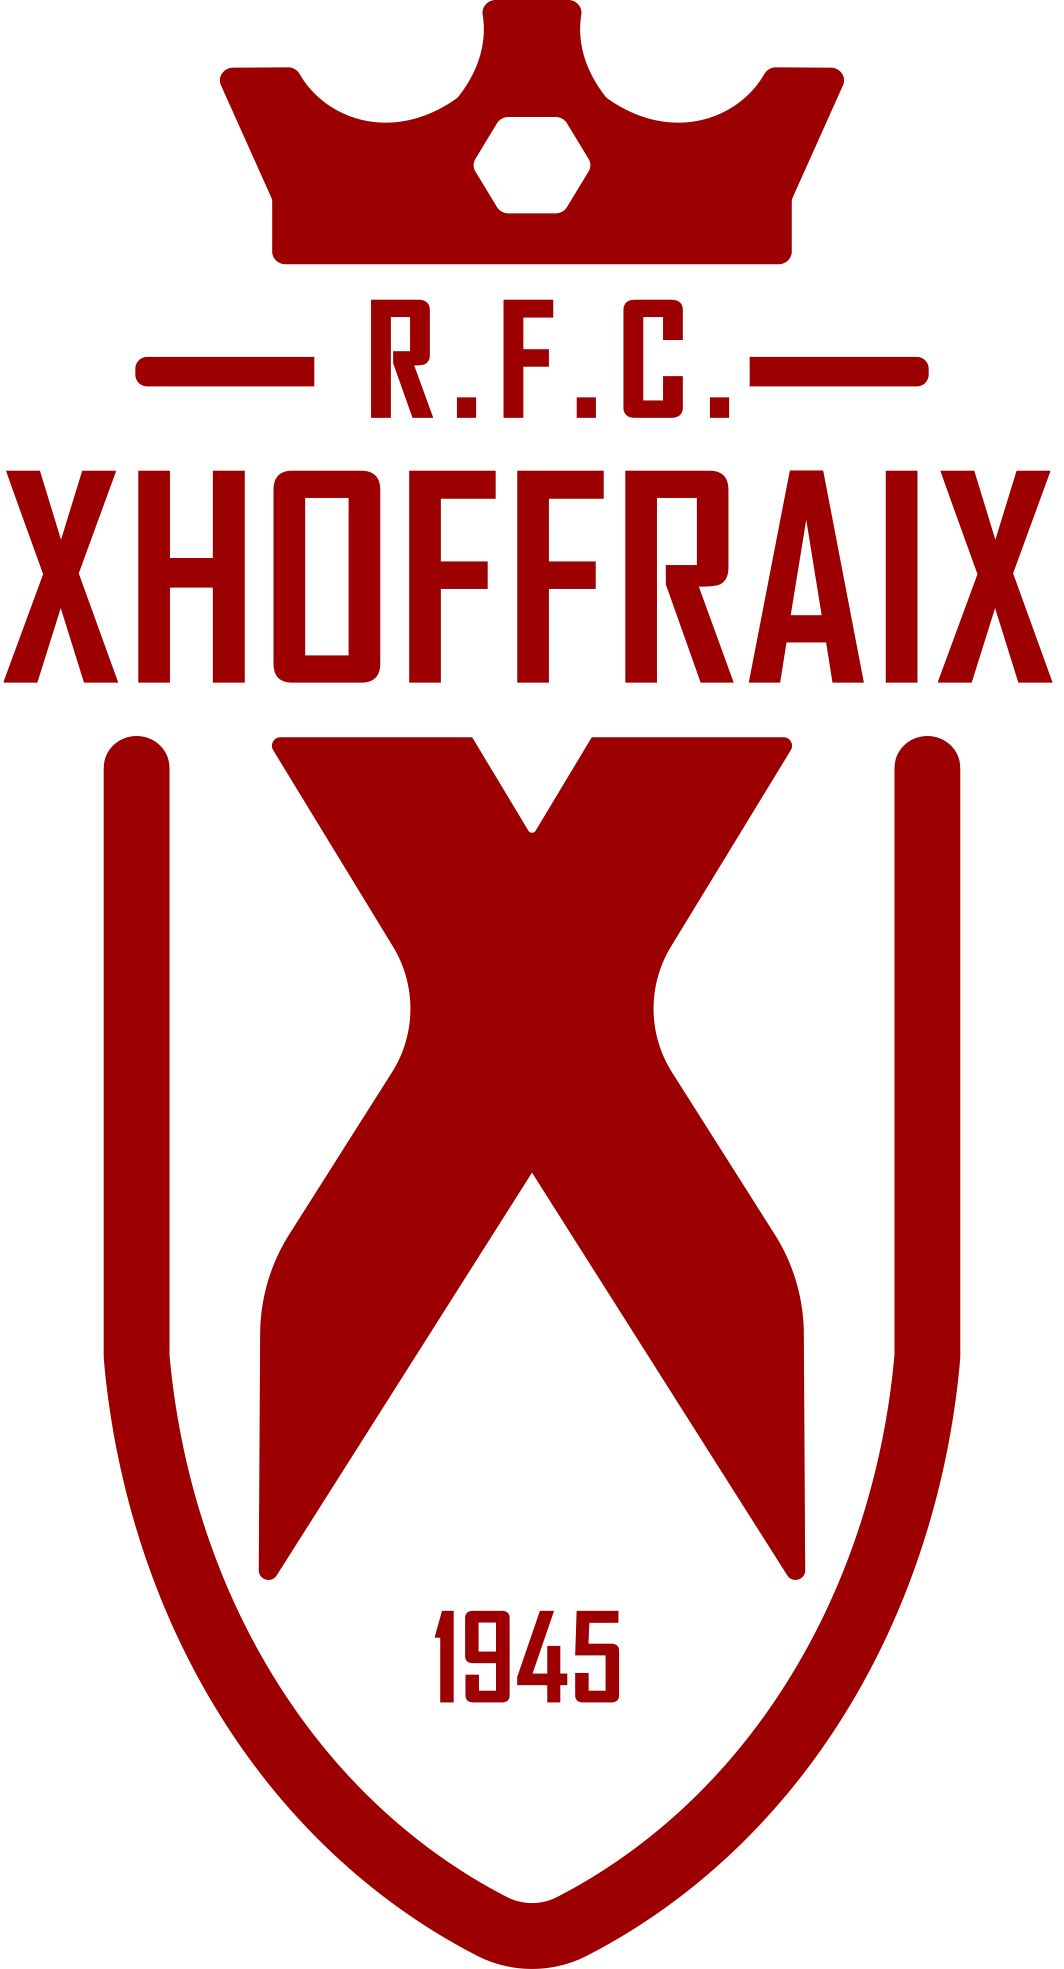 9 - R.F.C. Xhoffraix